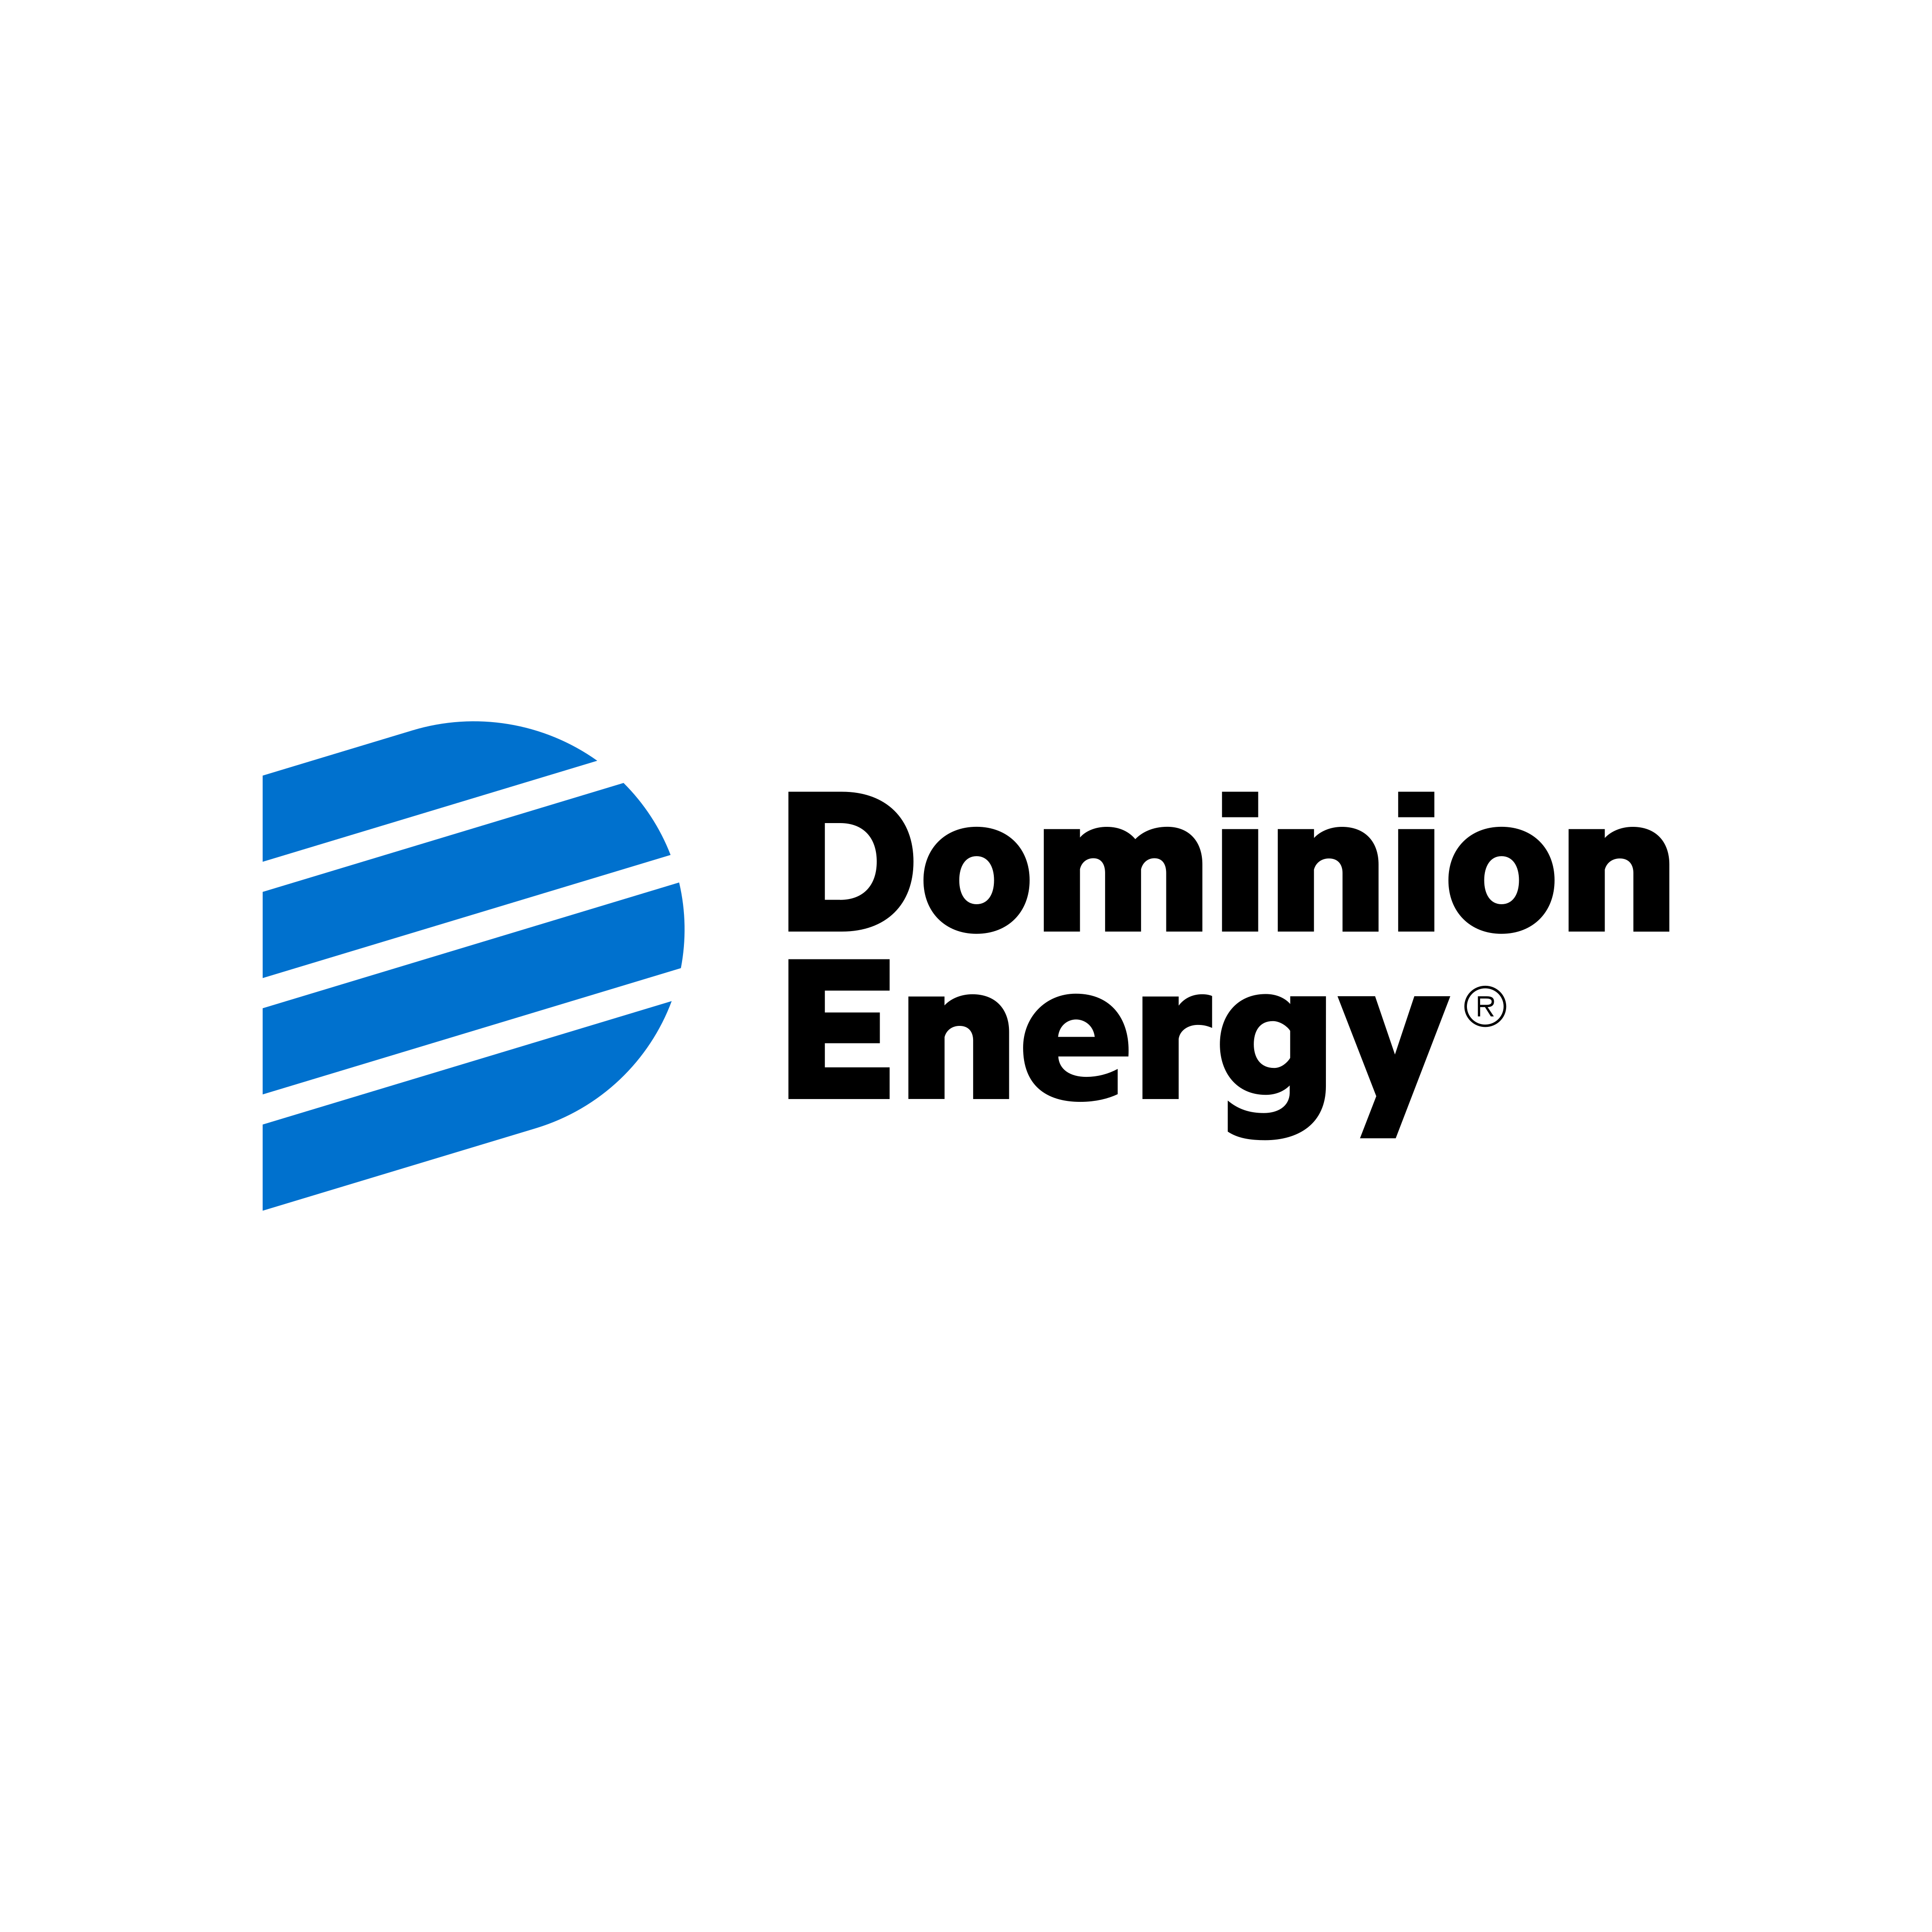 dominion energy logo 0 - Dominion Energy Logo